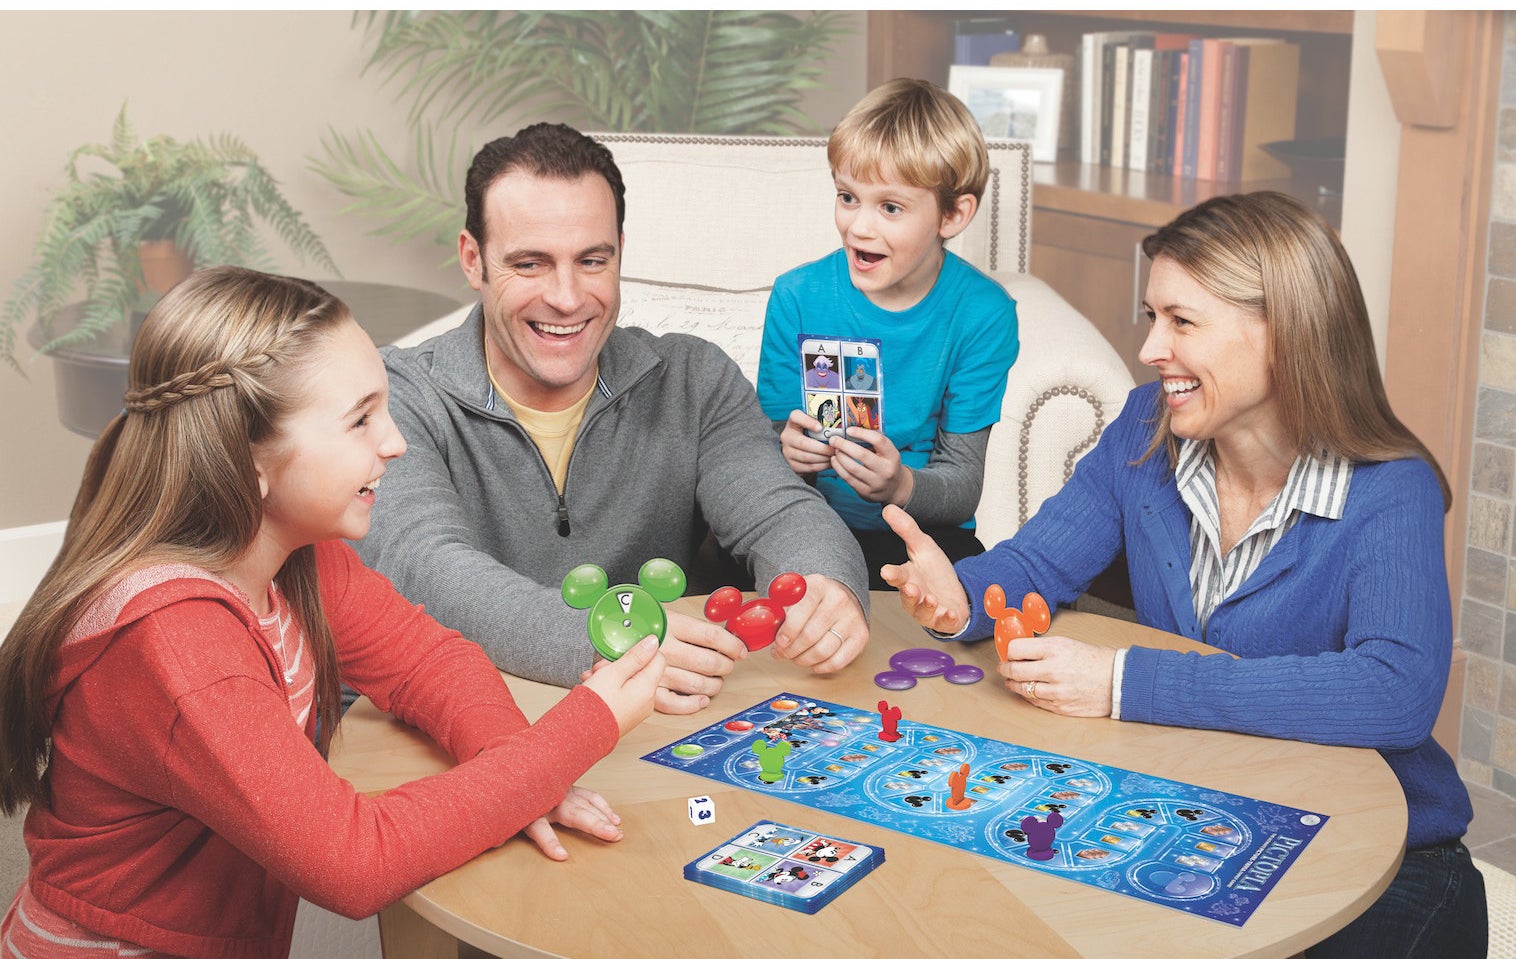 Интерактивная семейная игра. Семейные игры. Семейные традиции настольные игры. Семья. Игра. Семья играет.